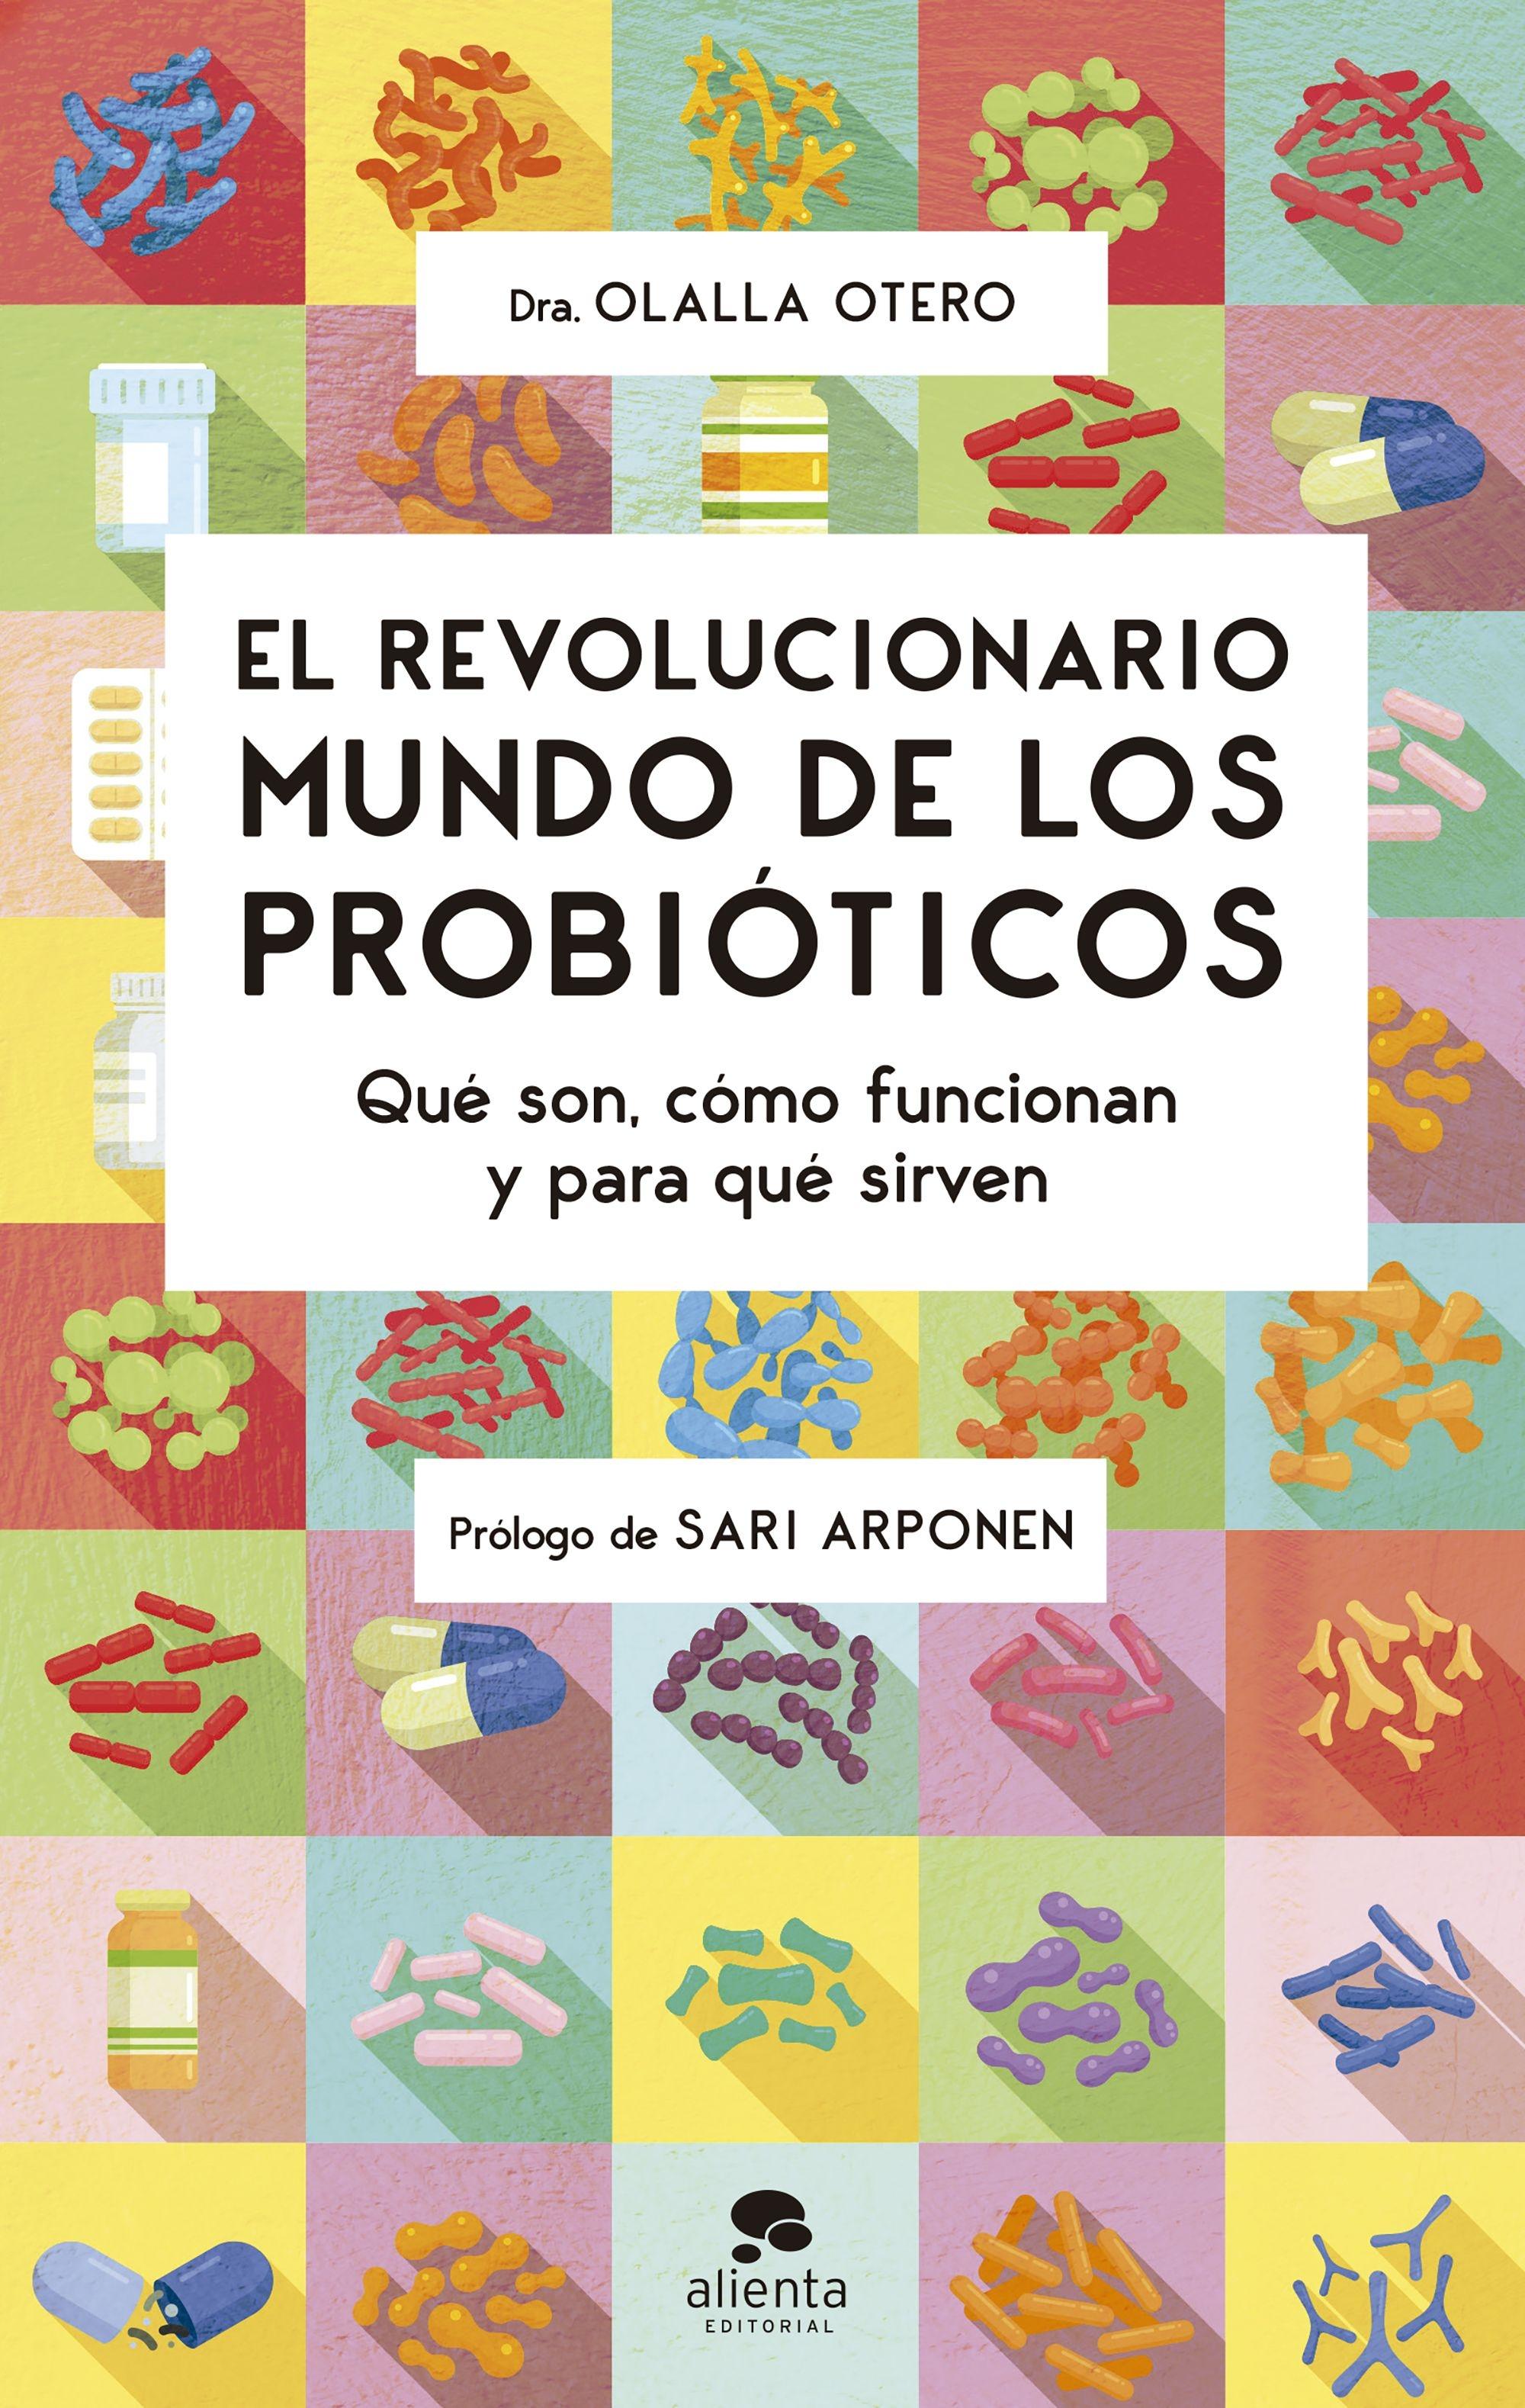 El Revolucionario Mundo de los Probióticos "Qué Son, Cómo Funcionan y para que Sirven"